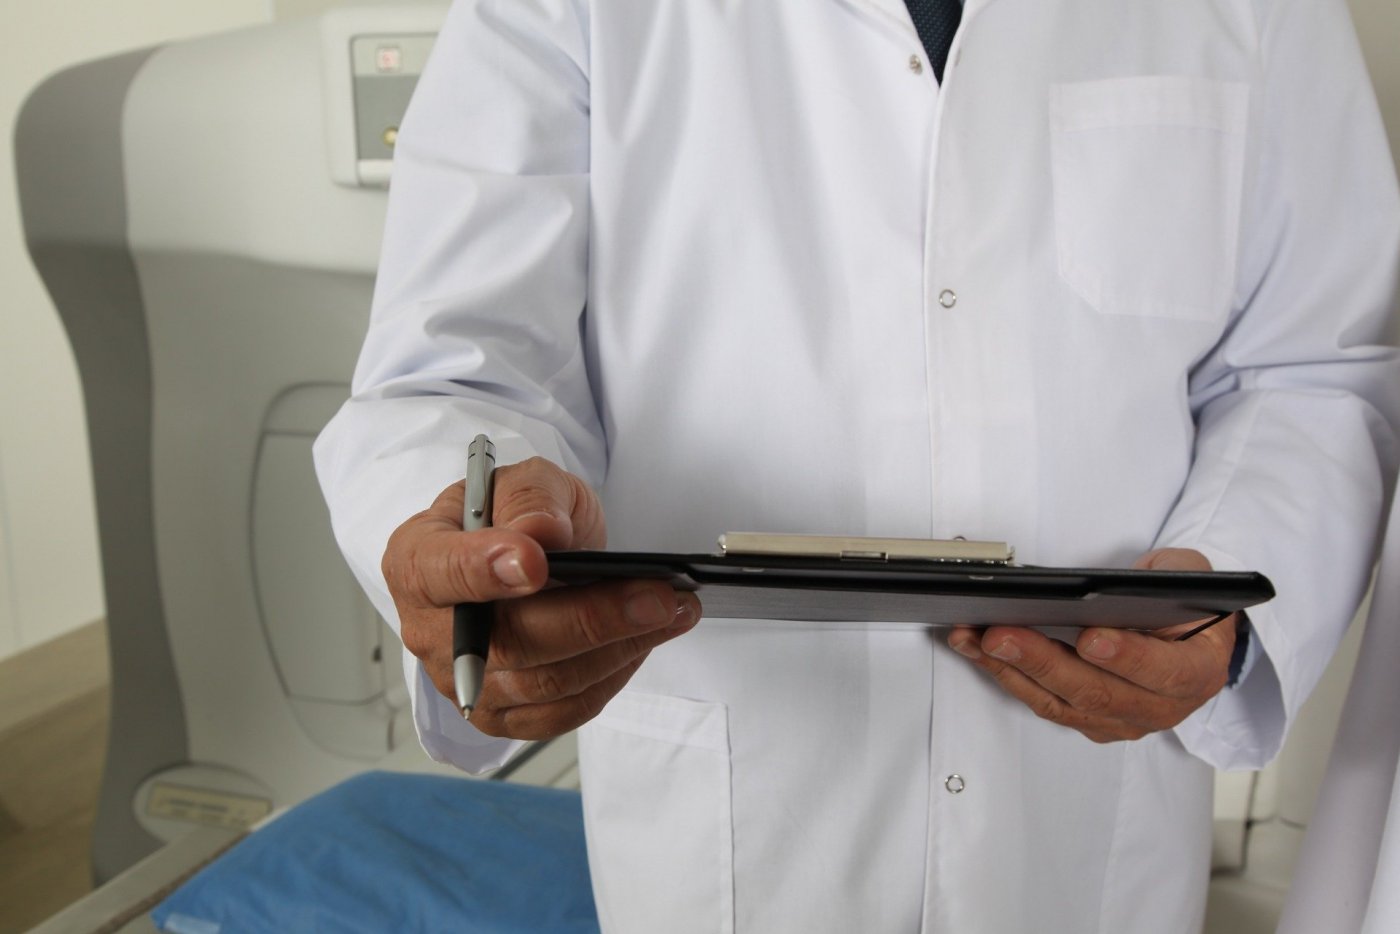 Zdj. ilustracyjne: lekarz w białym kitlu trzyma w rękach notatnik i długopis. Fot. ze strony www.pixabay.com